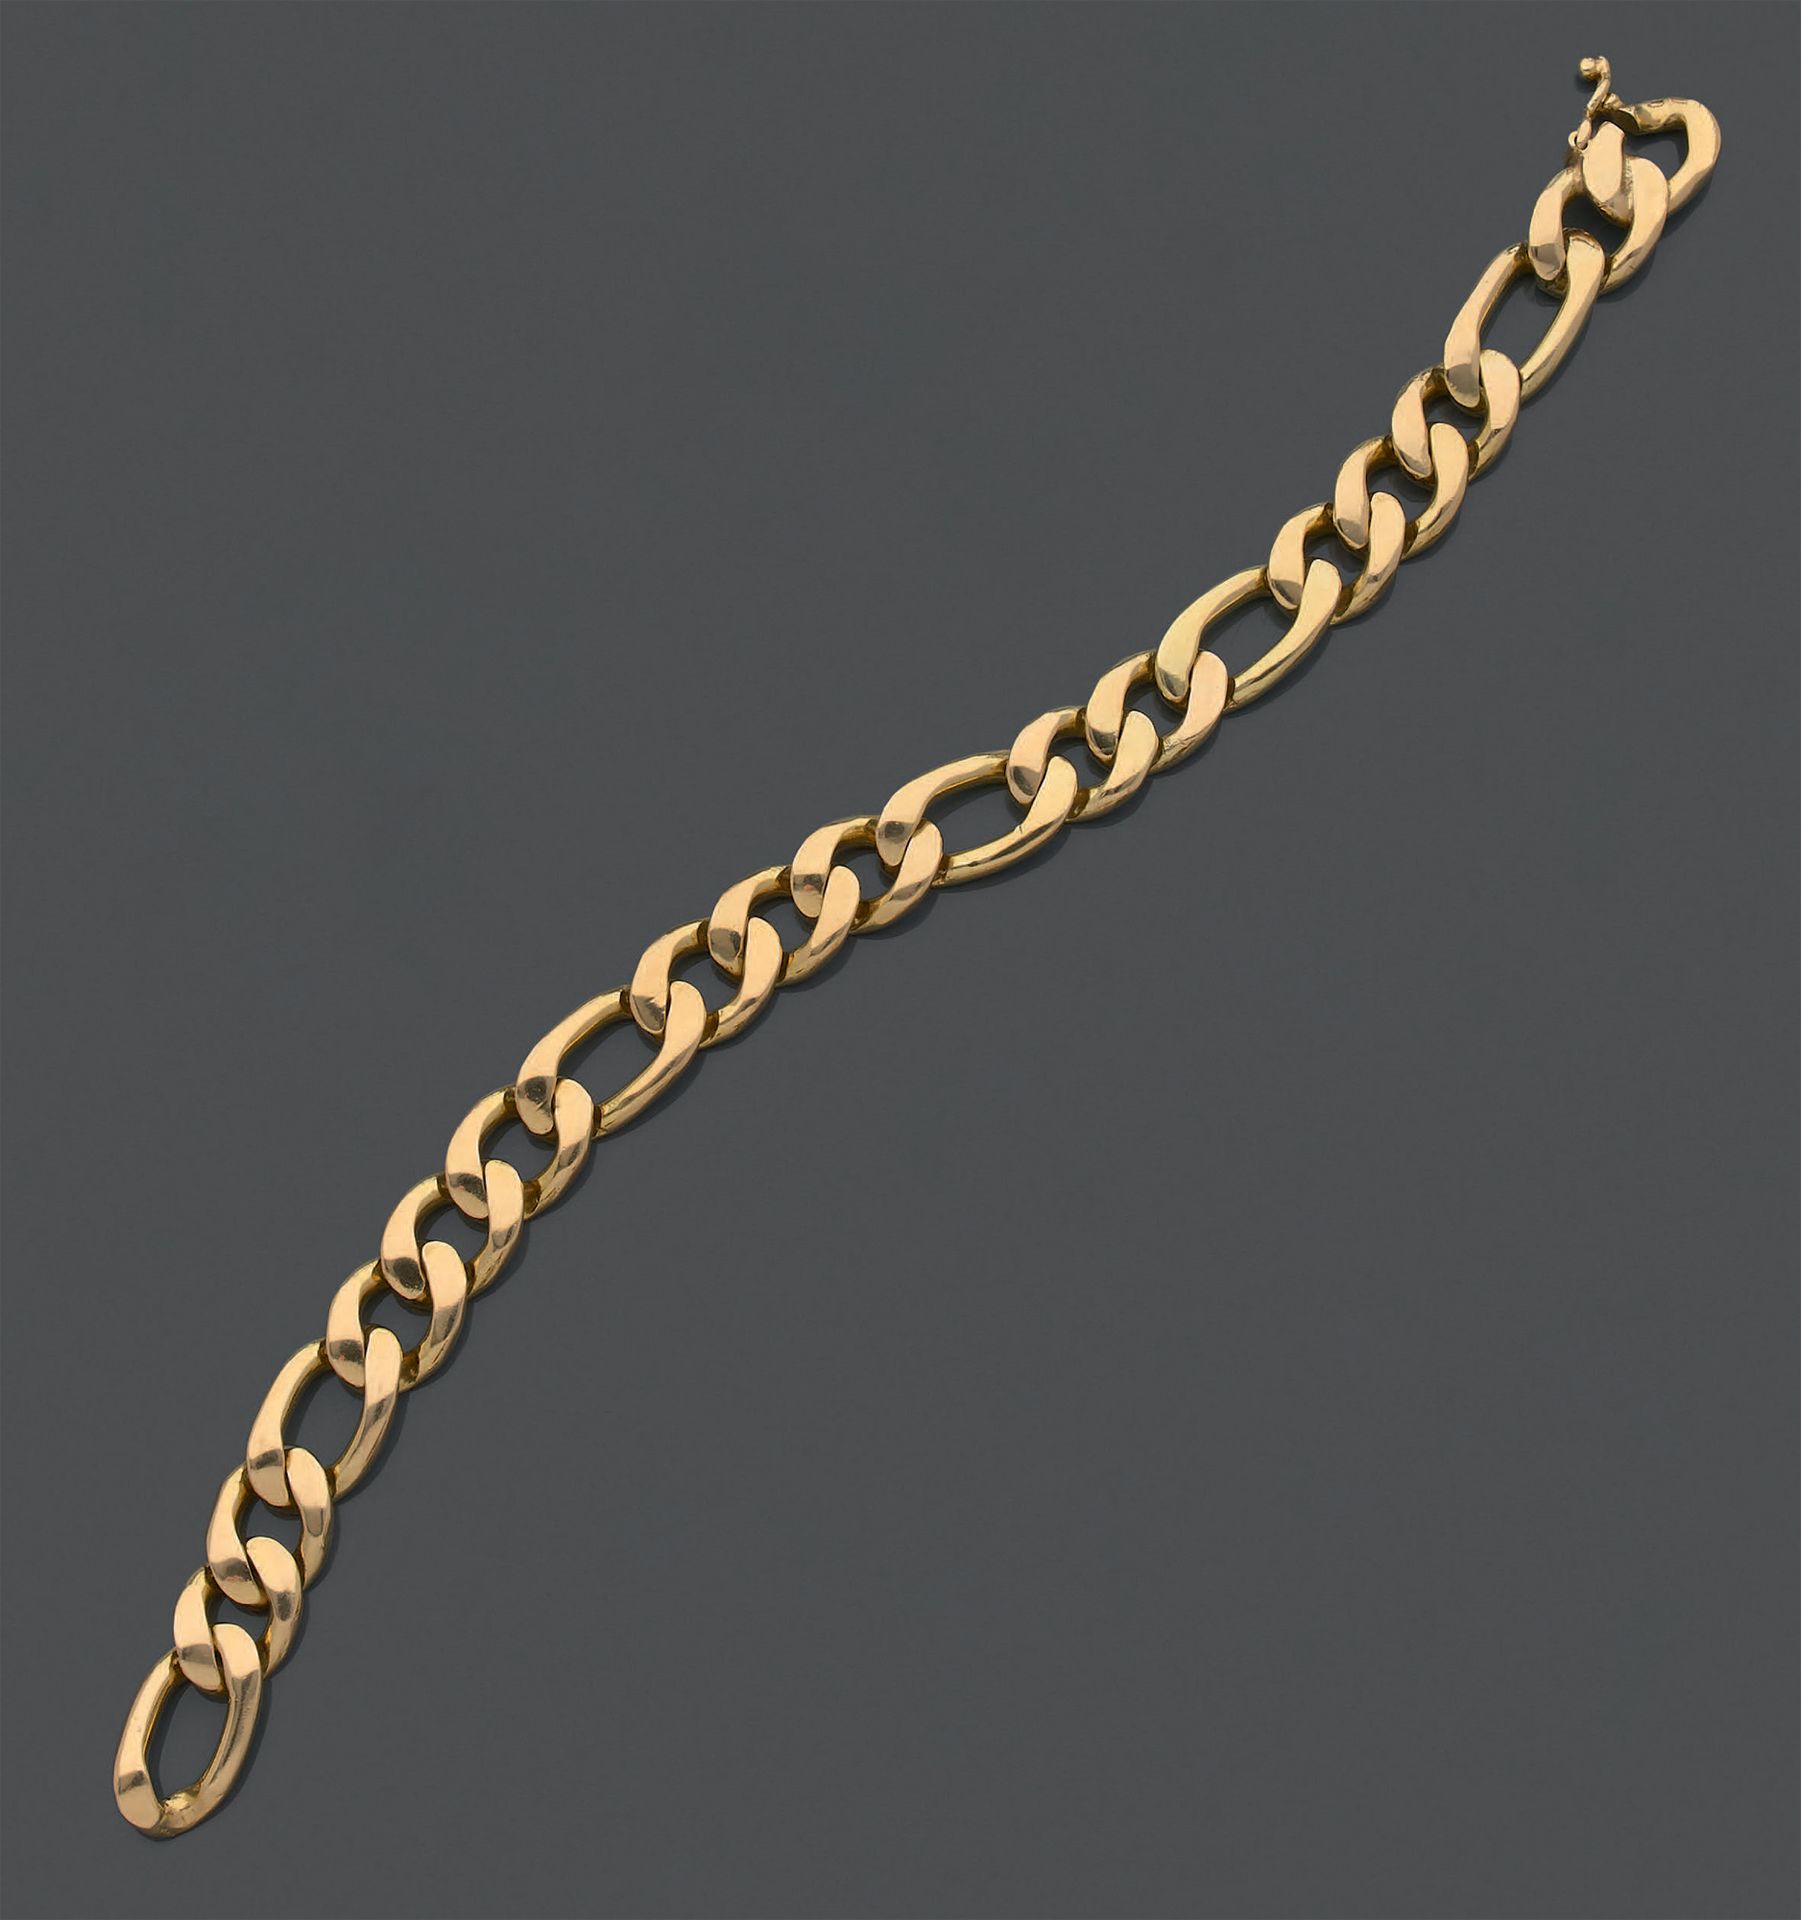 Null Armband aus 18 Karat Gelbgold (750) mit Figaro-Maschen.
Gewicht: 46,94 g.